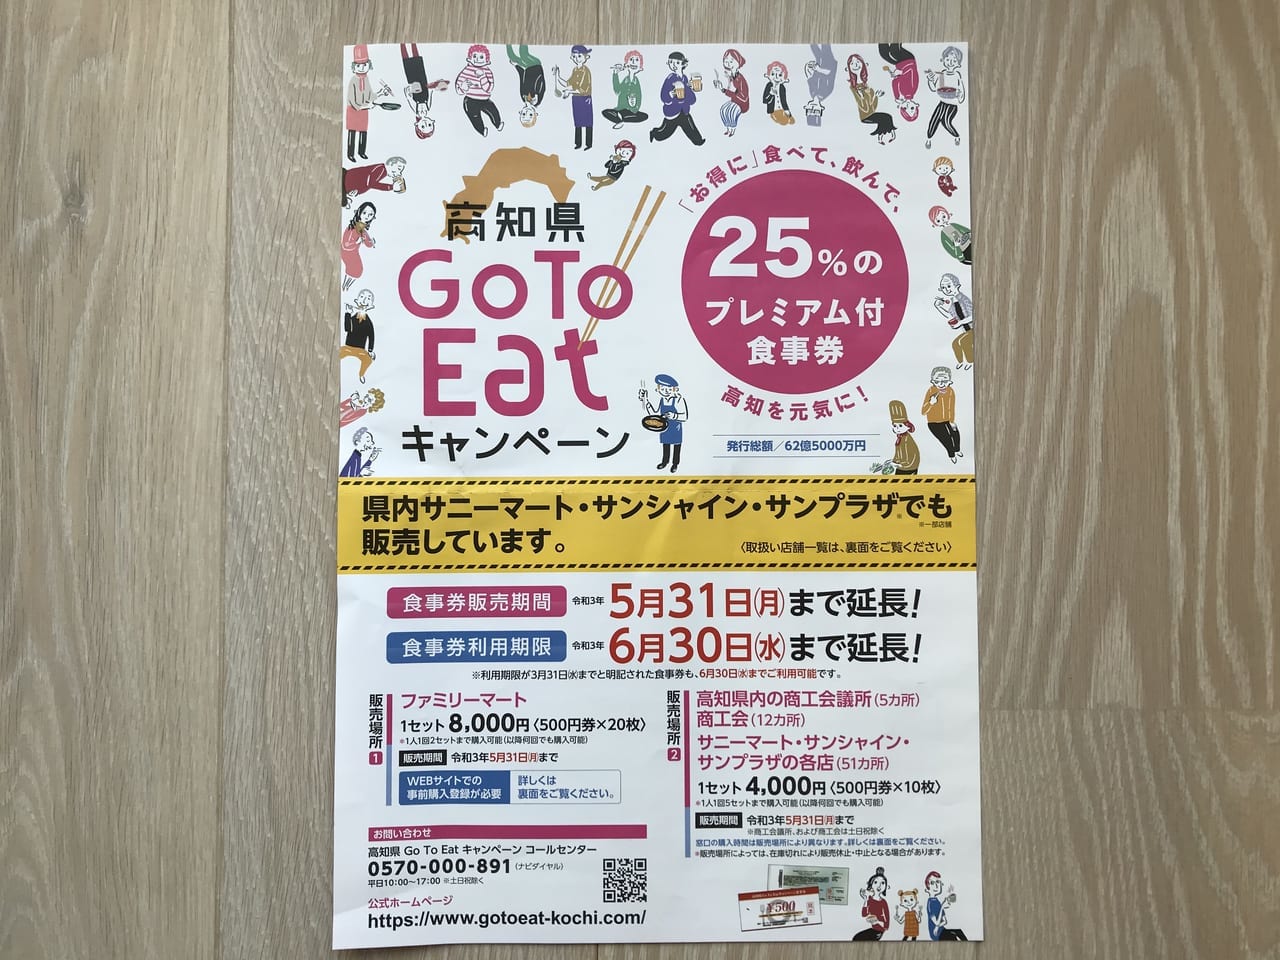 2021年4月、高知県Go To Eat食事券の延長や販売場所の追加が決定